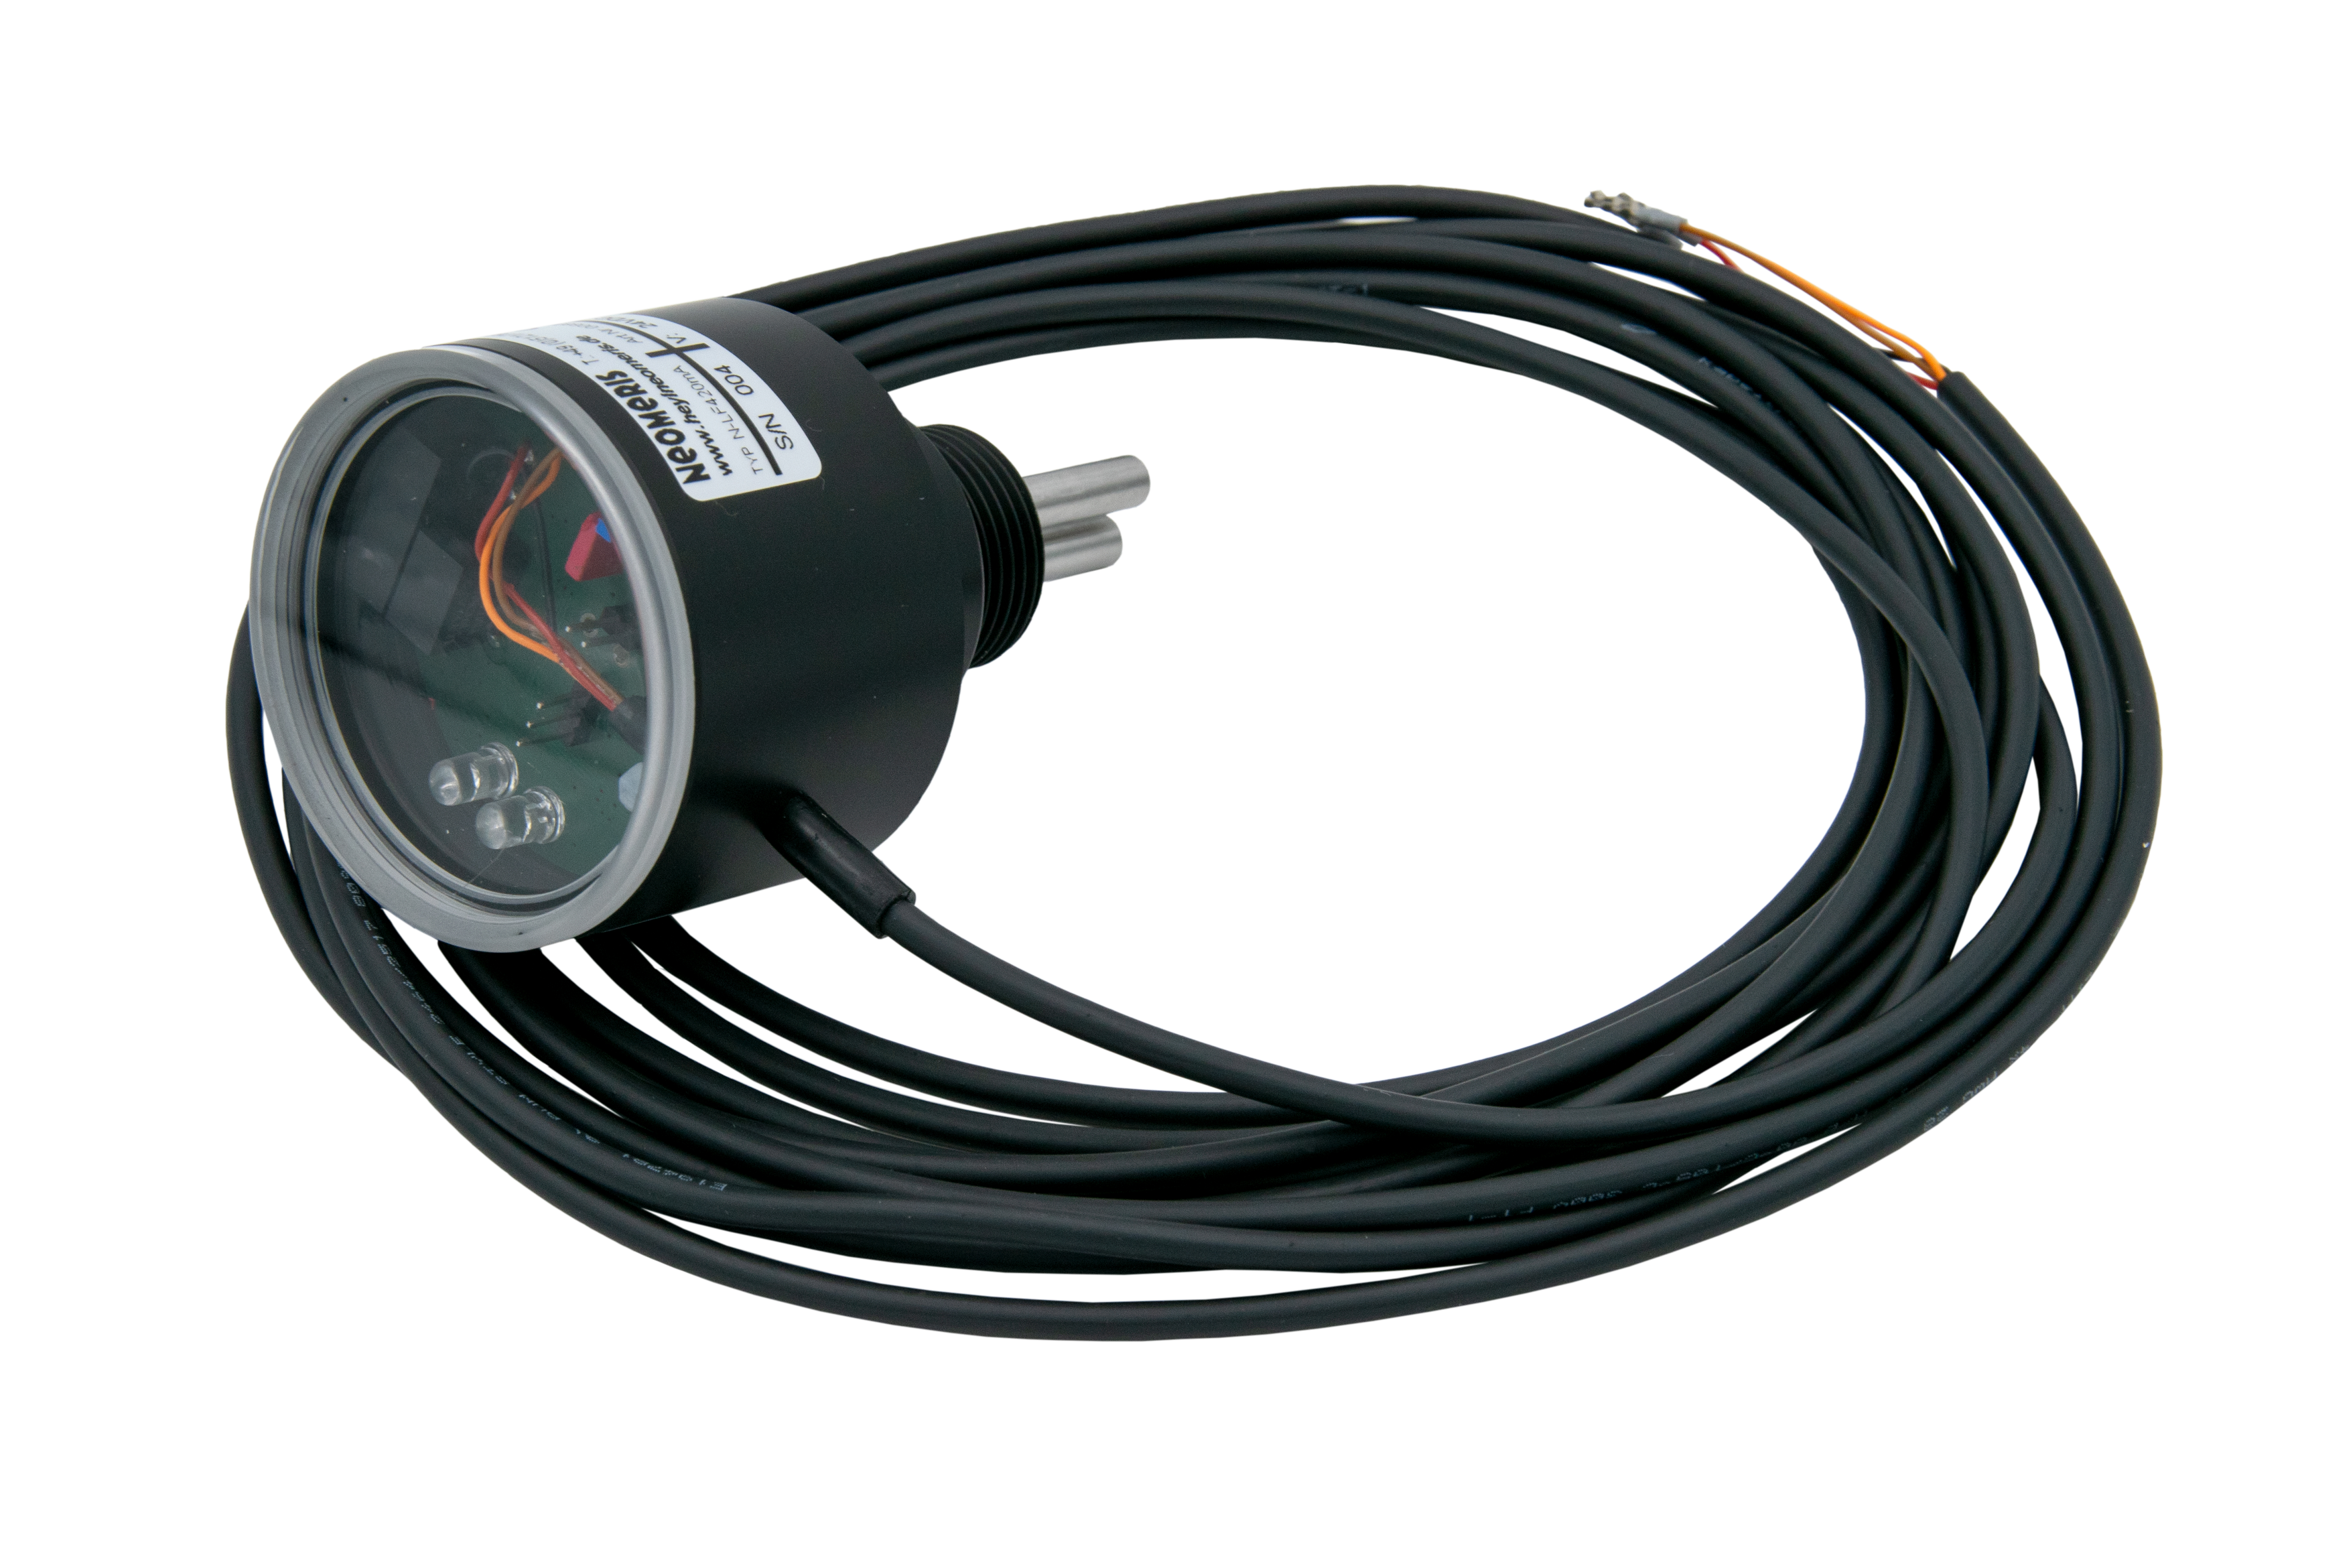 N-LF420 0-50µS Leitfähigkeitsmessgerät mit 4-20mA Ausgang, LED Anzeige nach Wunsch und 3/4 Zoll Einschraubgewinde